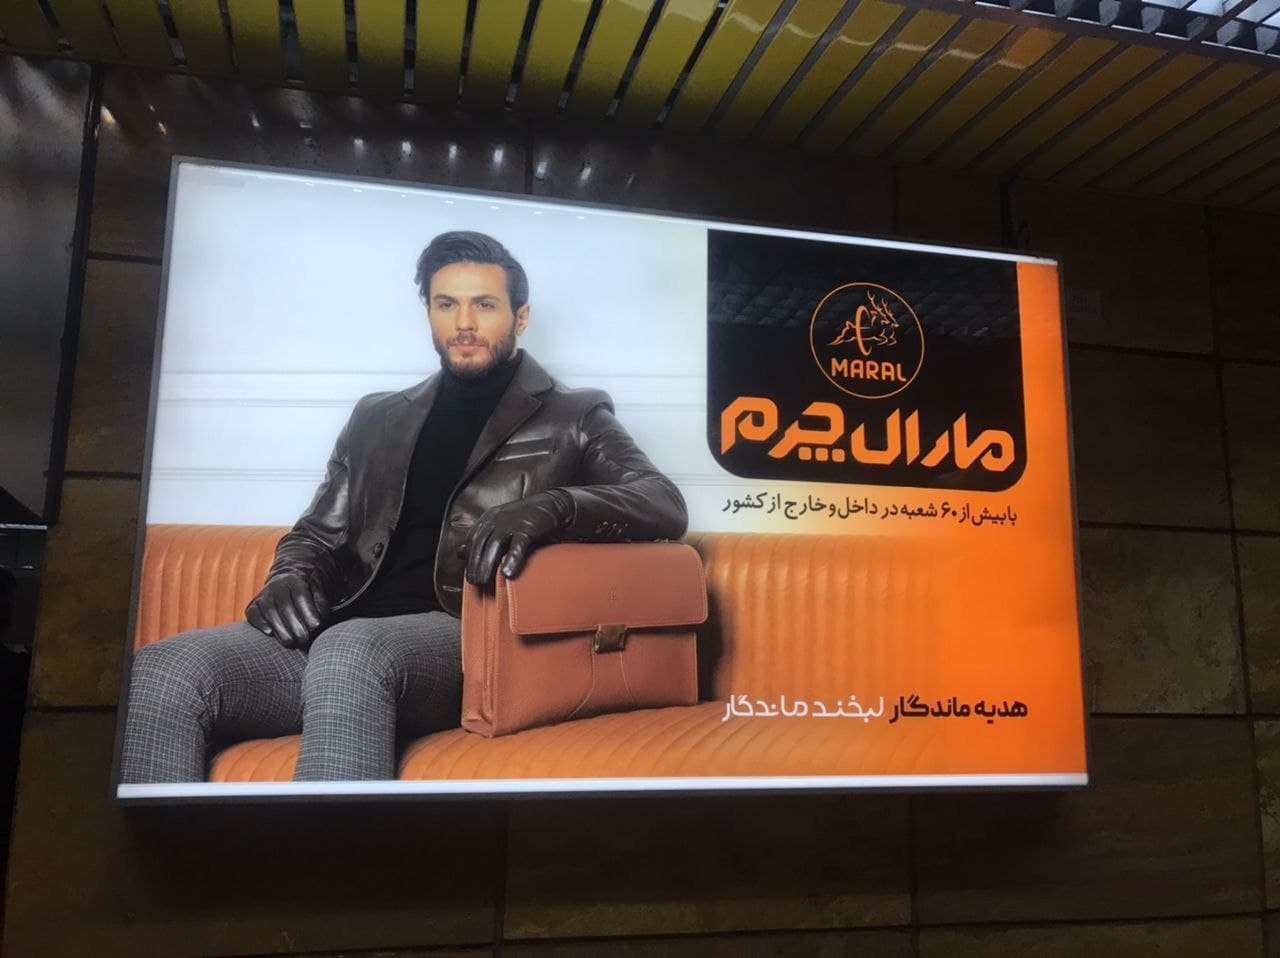 تبلیغات مترو و آثار آن بر مخاطب